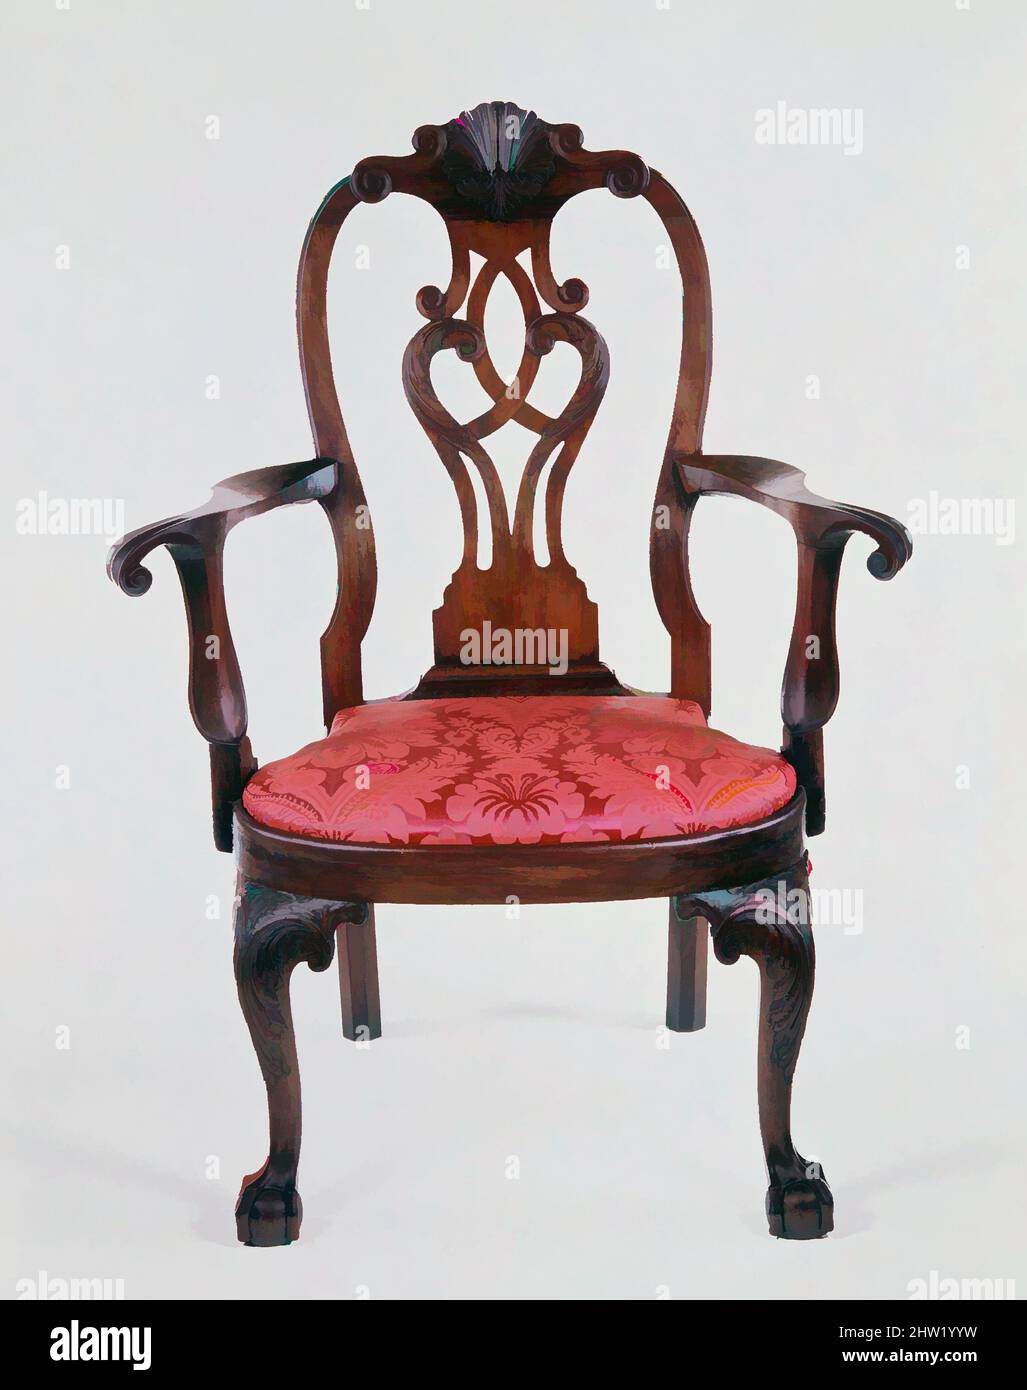 Kunst inspiriert von Sessel, ca. 1755, hergestellt in Philadelphia, Pennsylvania, USA, Mahagoni, 44 x 33 1/4 x 21 1/2 Zoll (111,8 x 84,5 x 54,6 cm), Möbel, dieser Sessel ist deutlich größer als die meisten Made in dieser Zeit und strahlt eine selbstbewusste monumentale Qualität aus. Es wurde gemacht, Classic Works modernisiert von Artotop mit einem Schuss Moderne. Formen, Farbe und Wert, auffällige visuelle Wirkung auf Kunst. Emotionen durch Freiheit von Kunstwerken auf zeitgemäße Weise. Eine zeitlose Botschaft, die eine wild kreative neue Richtung verfolgt. Künstler, die sich dem digitalen Medium zuwenden und die Artotop NFT erschaffen Stockfoto